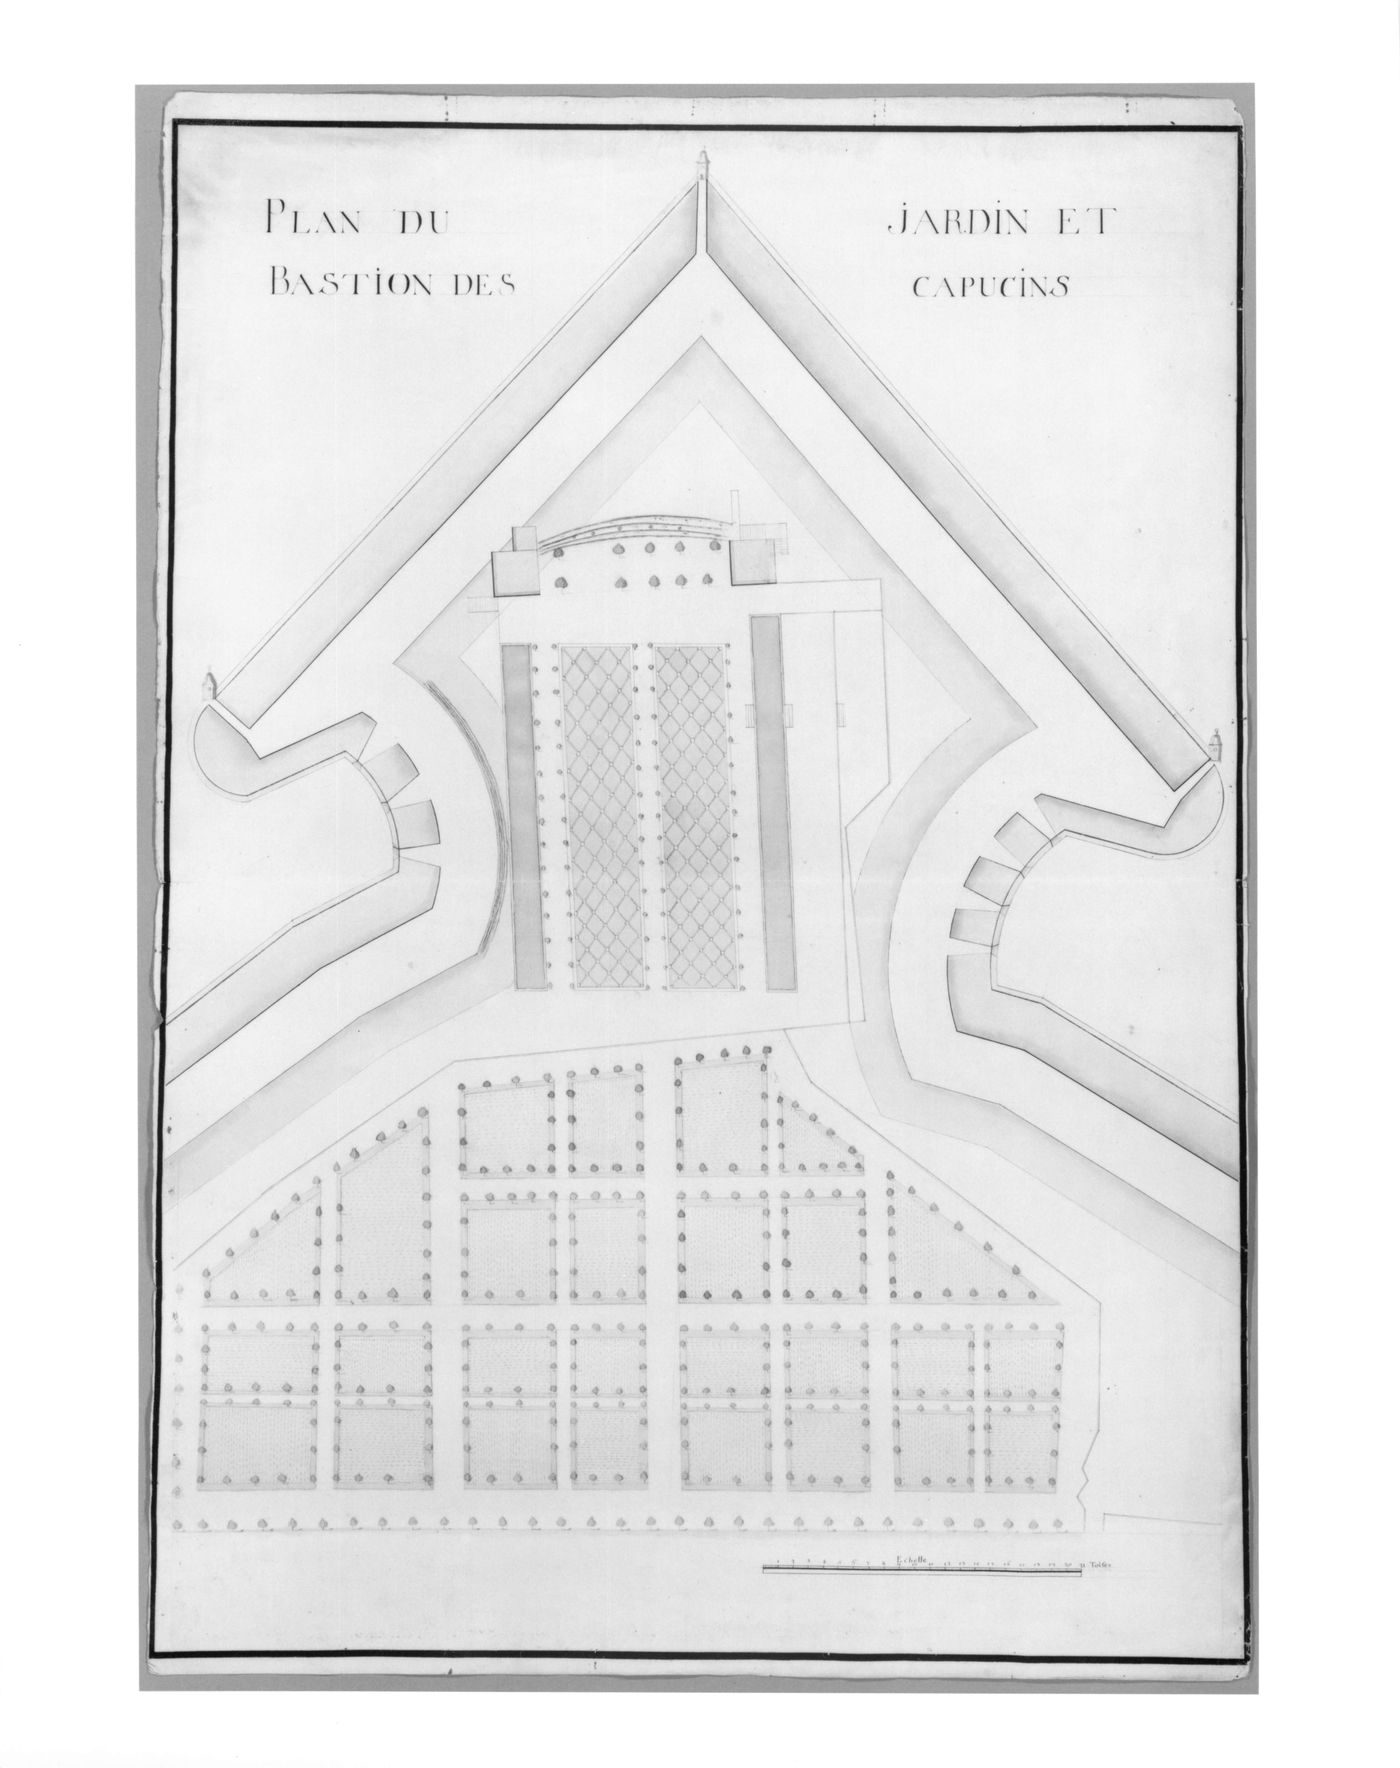 Plan of the "Bastion des Capucins" at Perpignan